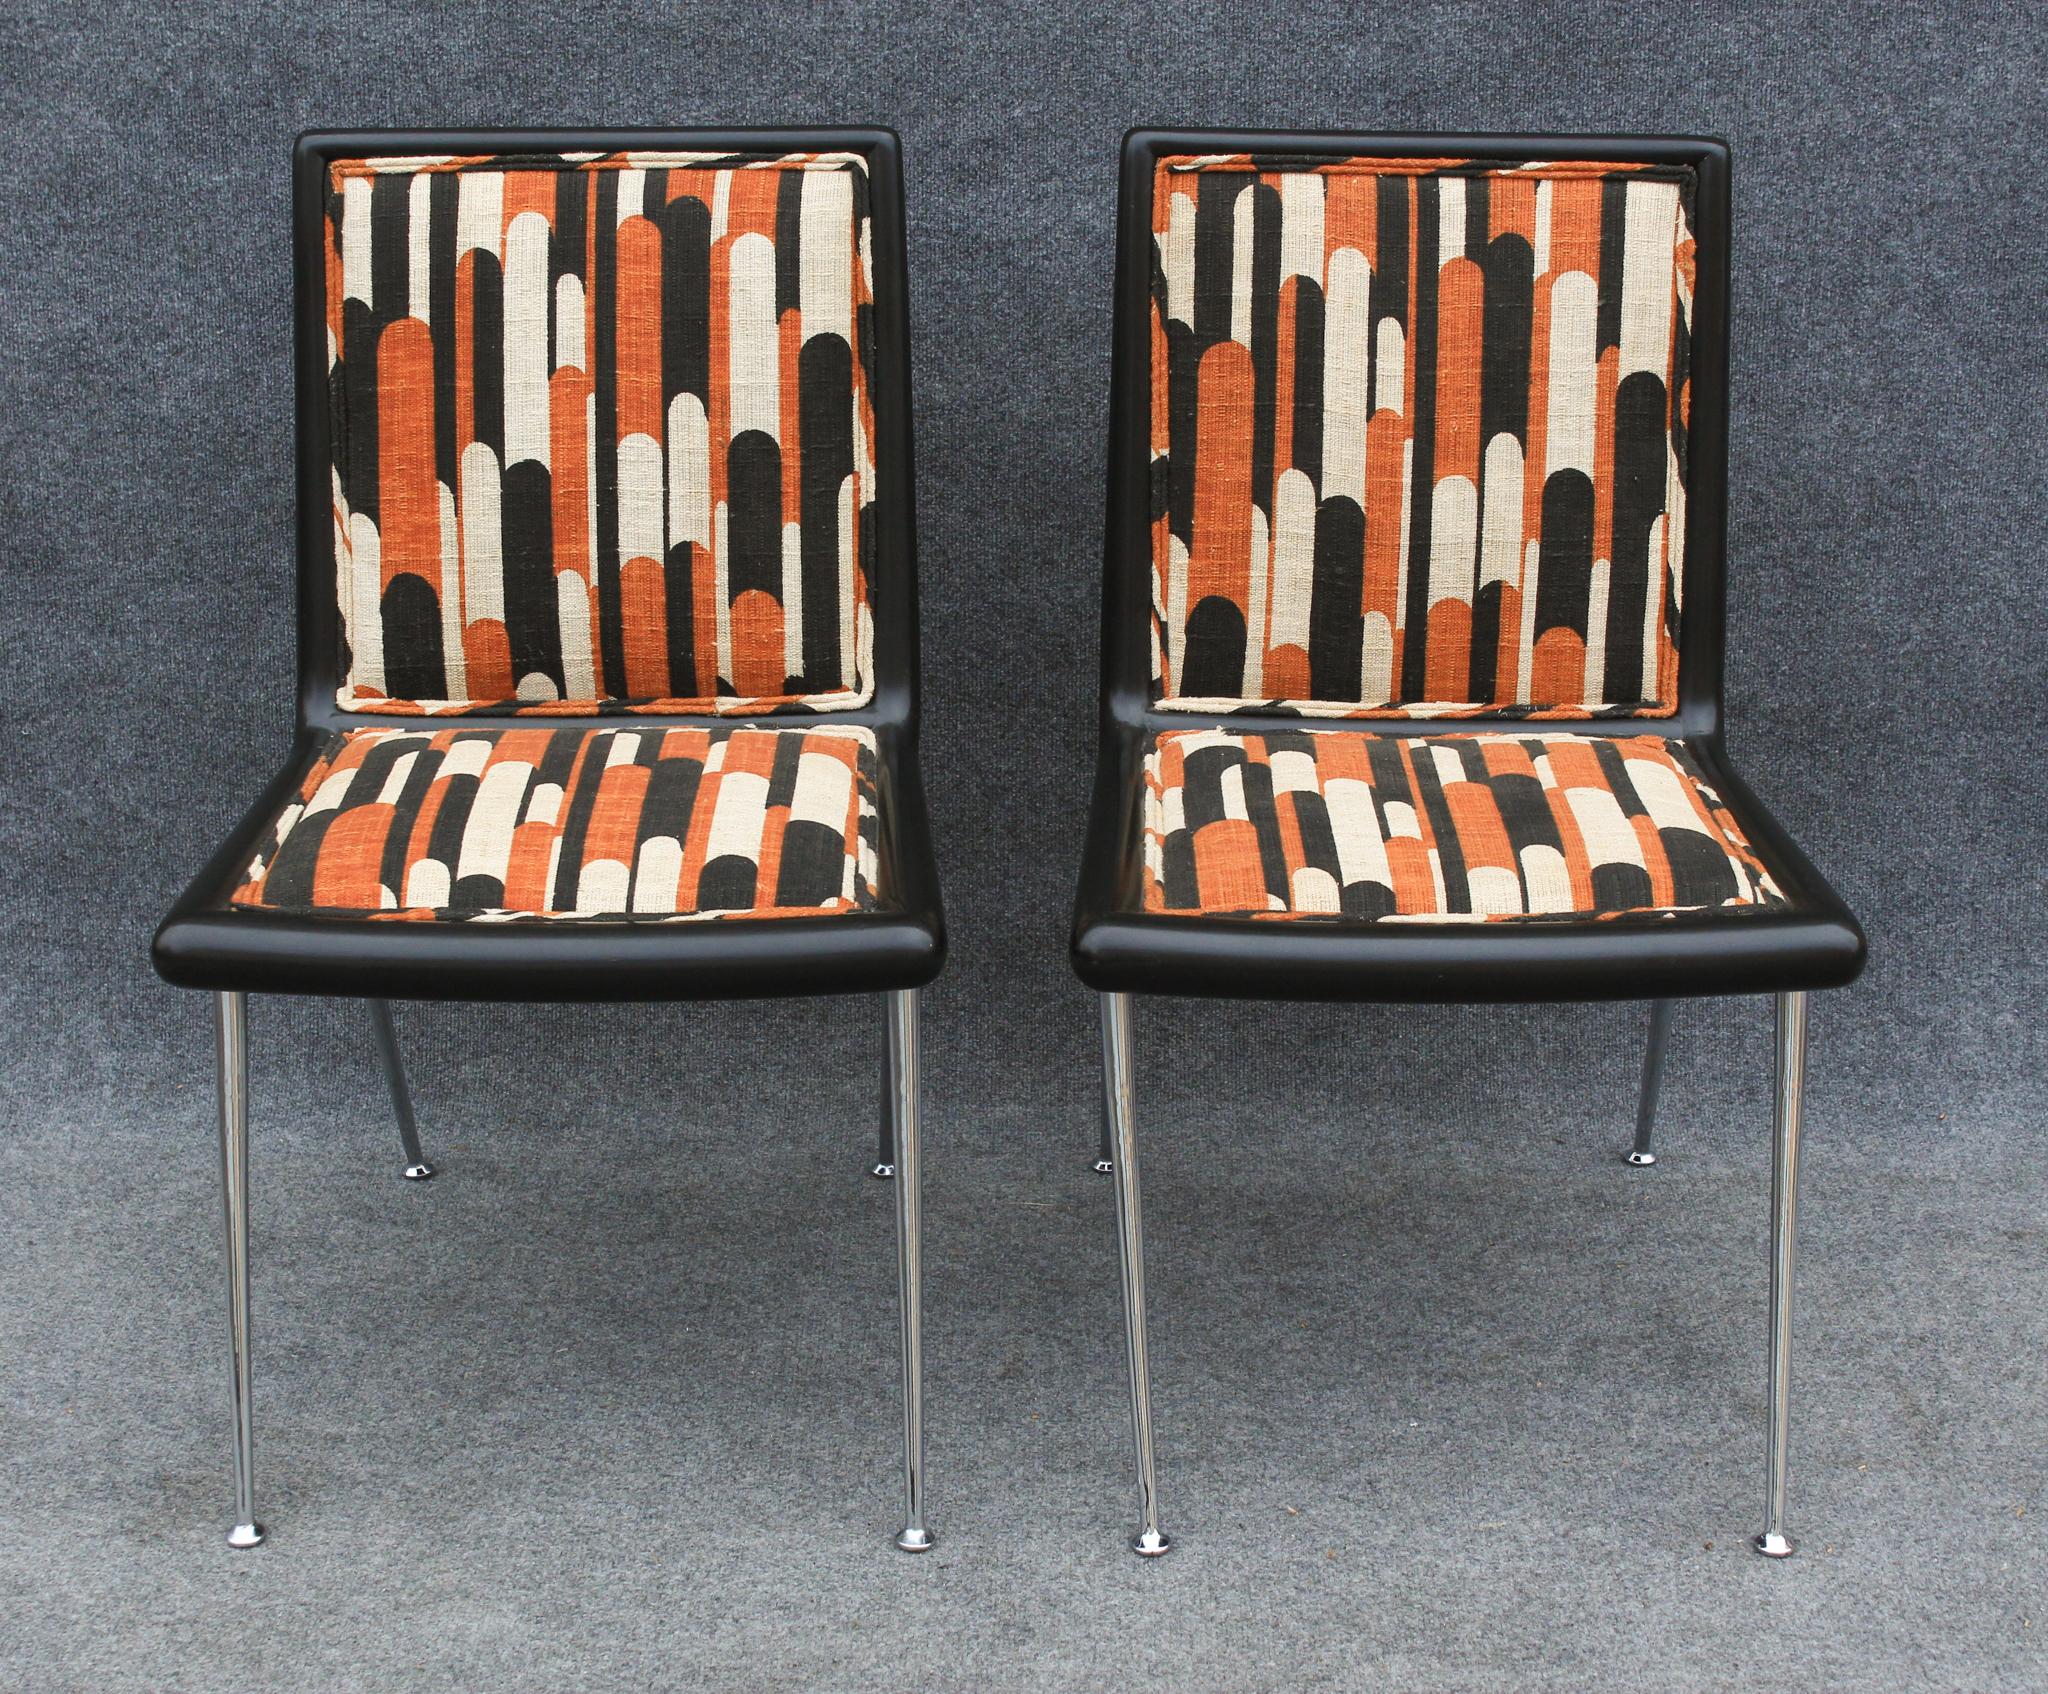 Conçu par AT&T. Robsjohn Gibbings dans les années 1960, ces chaises faisaient partie d'un partenariat de longue date avec Widdicomb. Parmi les nombreuses pièces réalisées avec succès, celle-ci est l'une des plus rares, encore plus exclusive que la